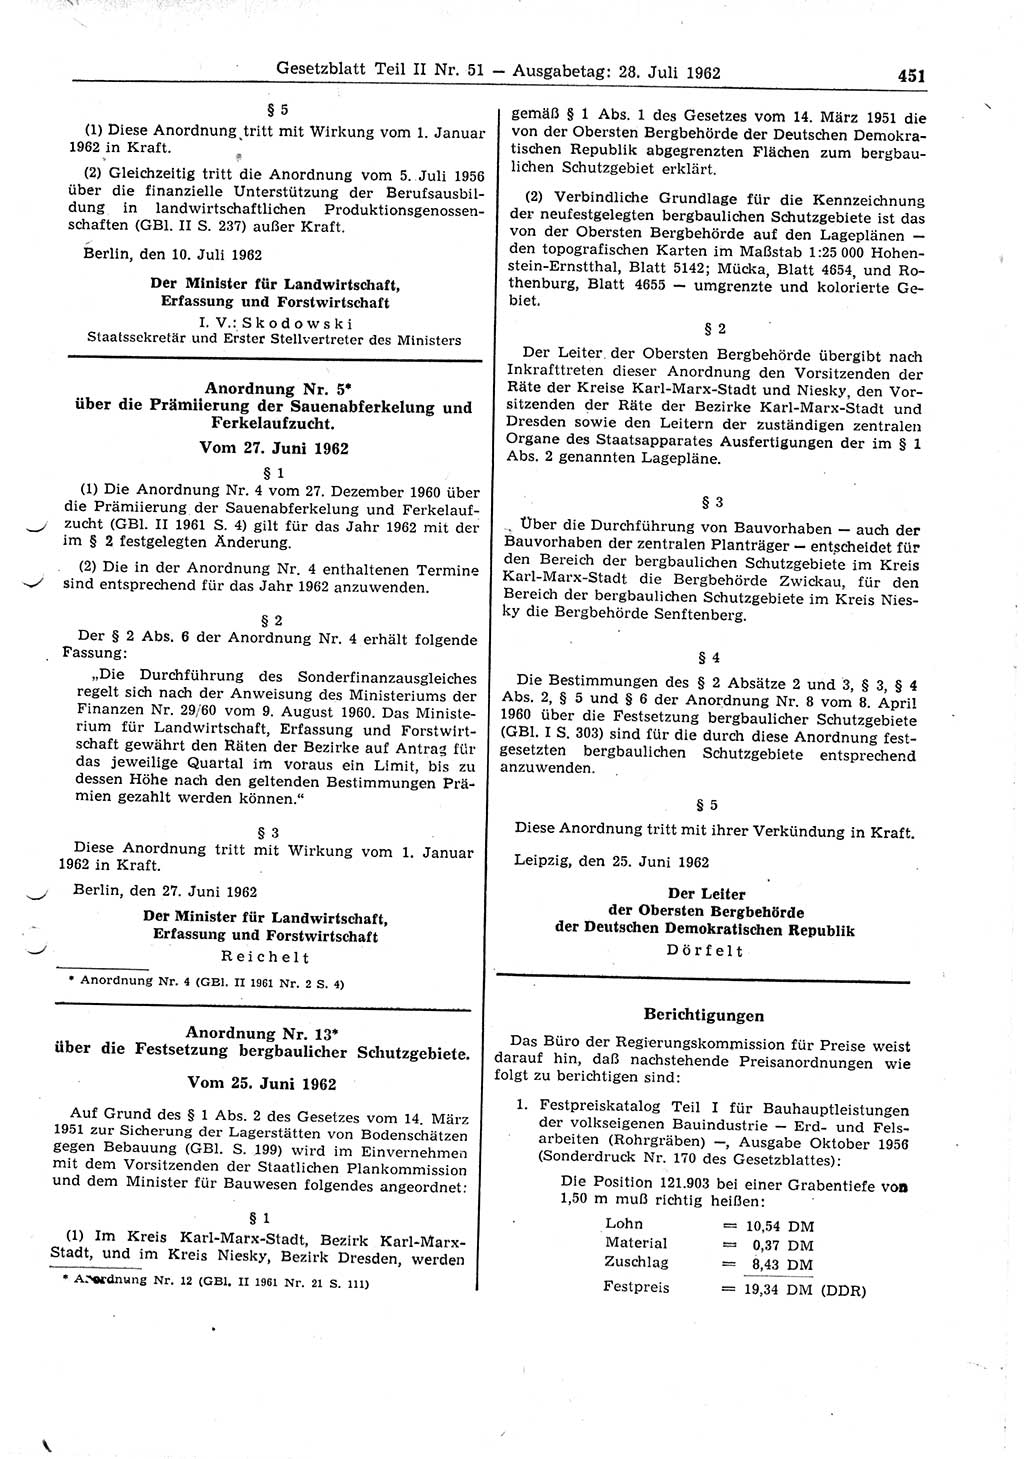 Gesetzblatt (GBl.) der Deutschen Demokratischen Republik (DDR) Teil ⅠⅠ 1962, Seite 451 (GBl. DDR ⅠⅠ 1962, S. 451)